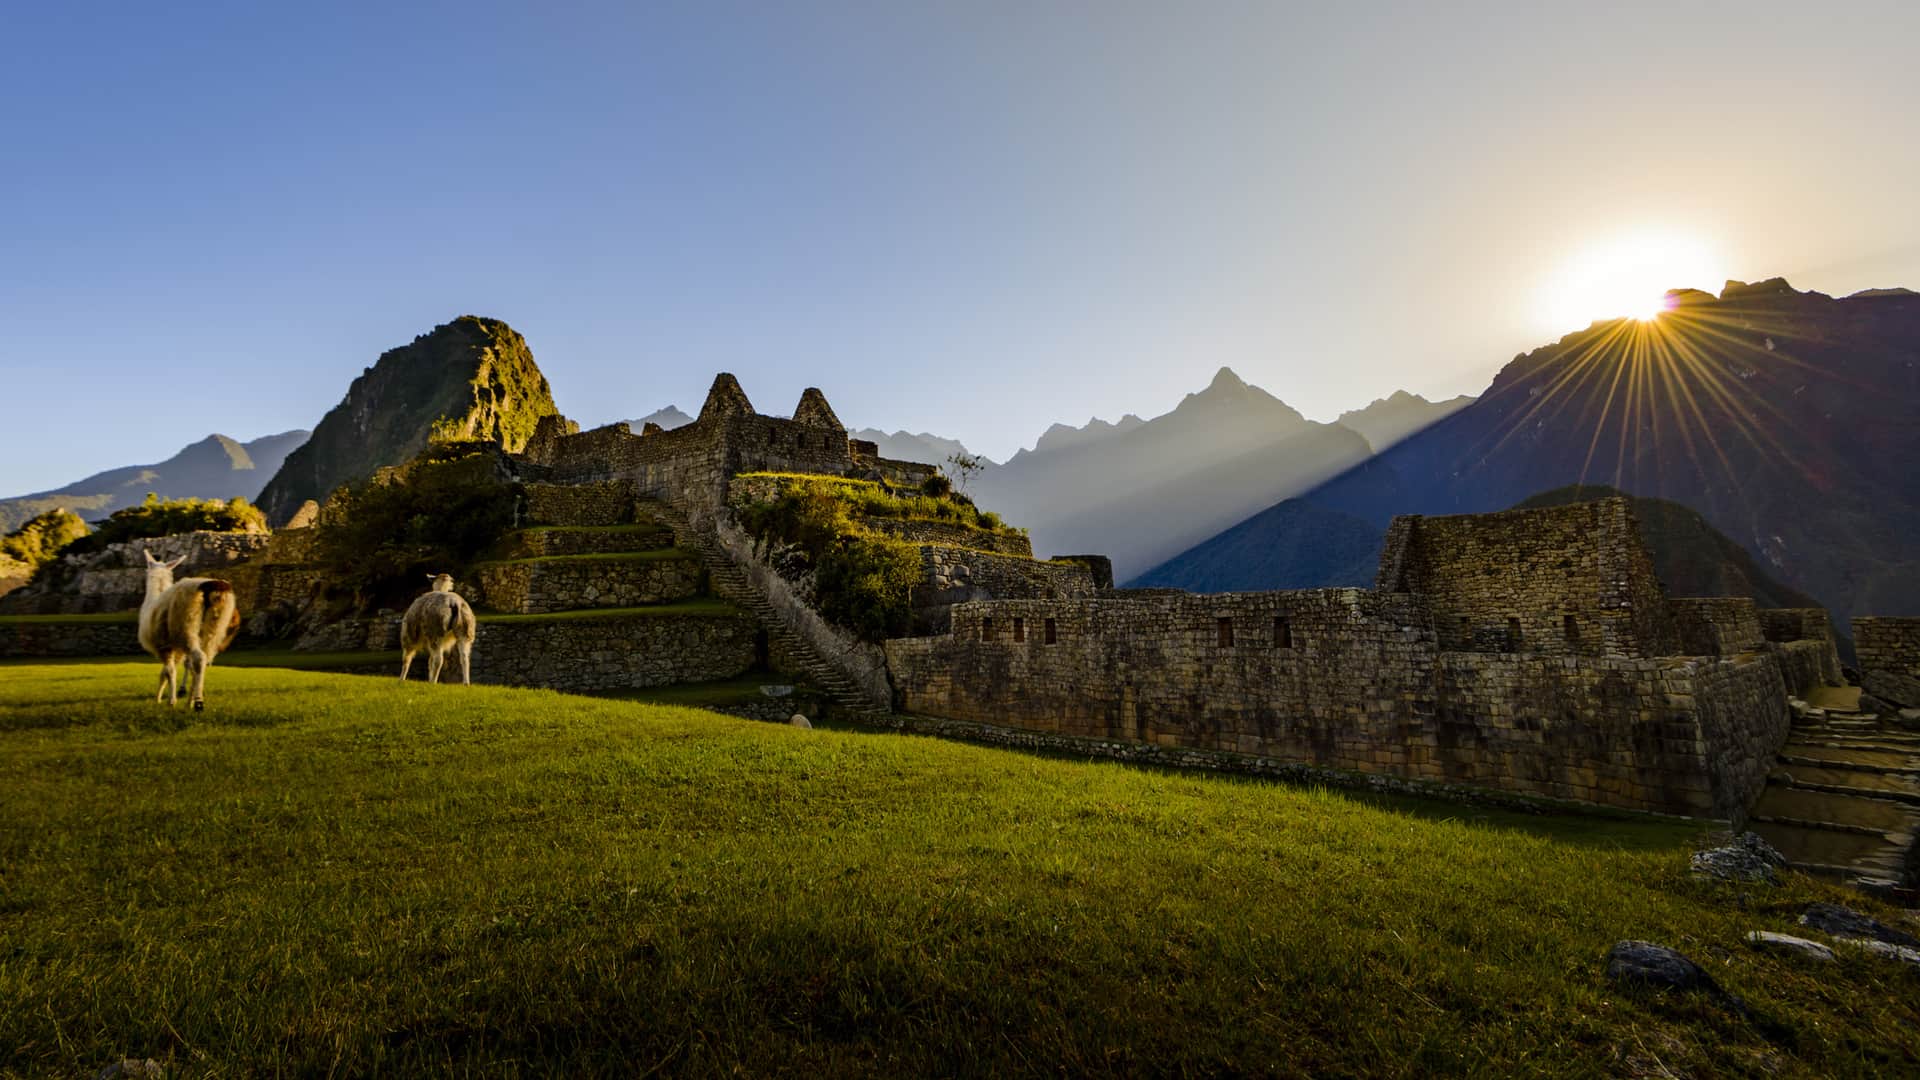 View of Machu Picchu at Sunrise